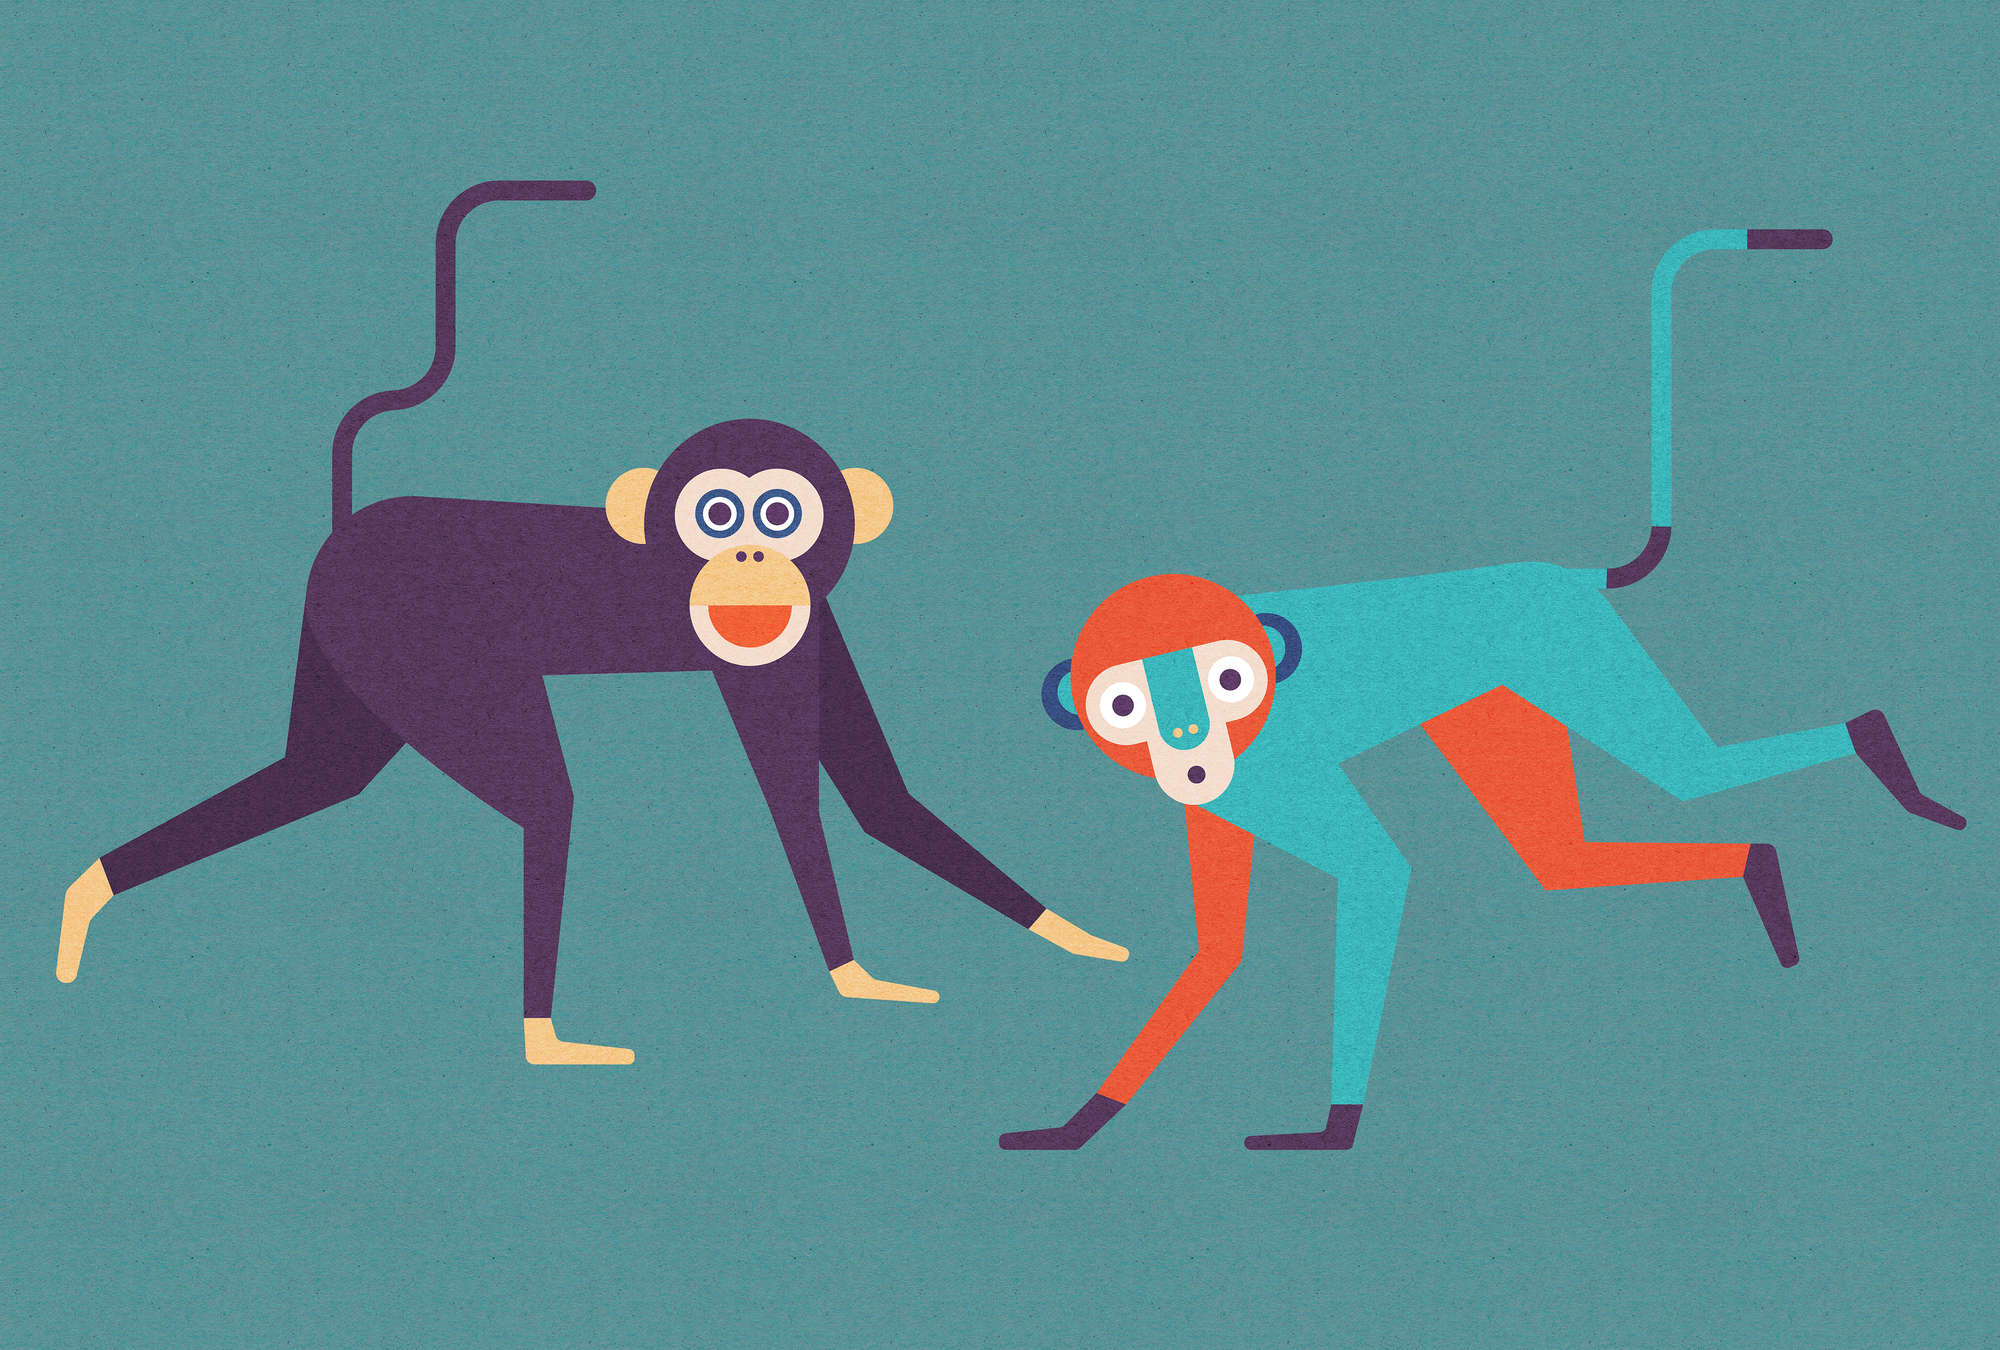             Monkey Business 1 - Fototapete in Pappe Struktur, Affen-Bande im Comic-Stil – Beige, Orange | Mattes Glattvlies
        